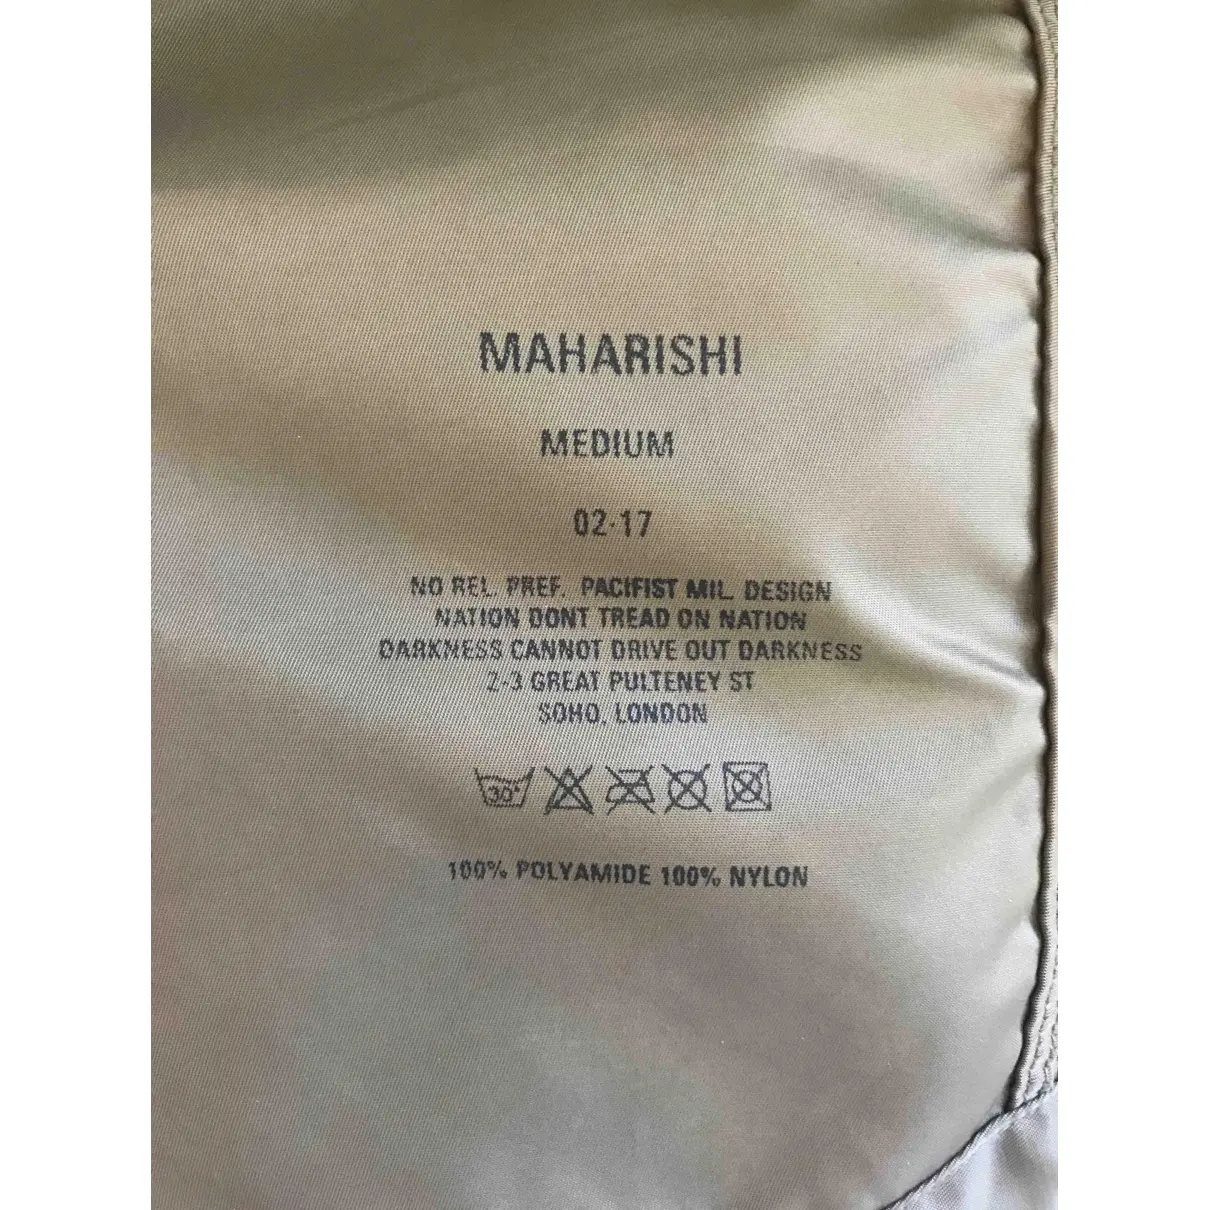 Buy Maharishi Coat online